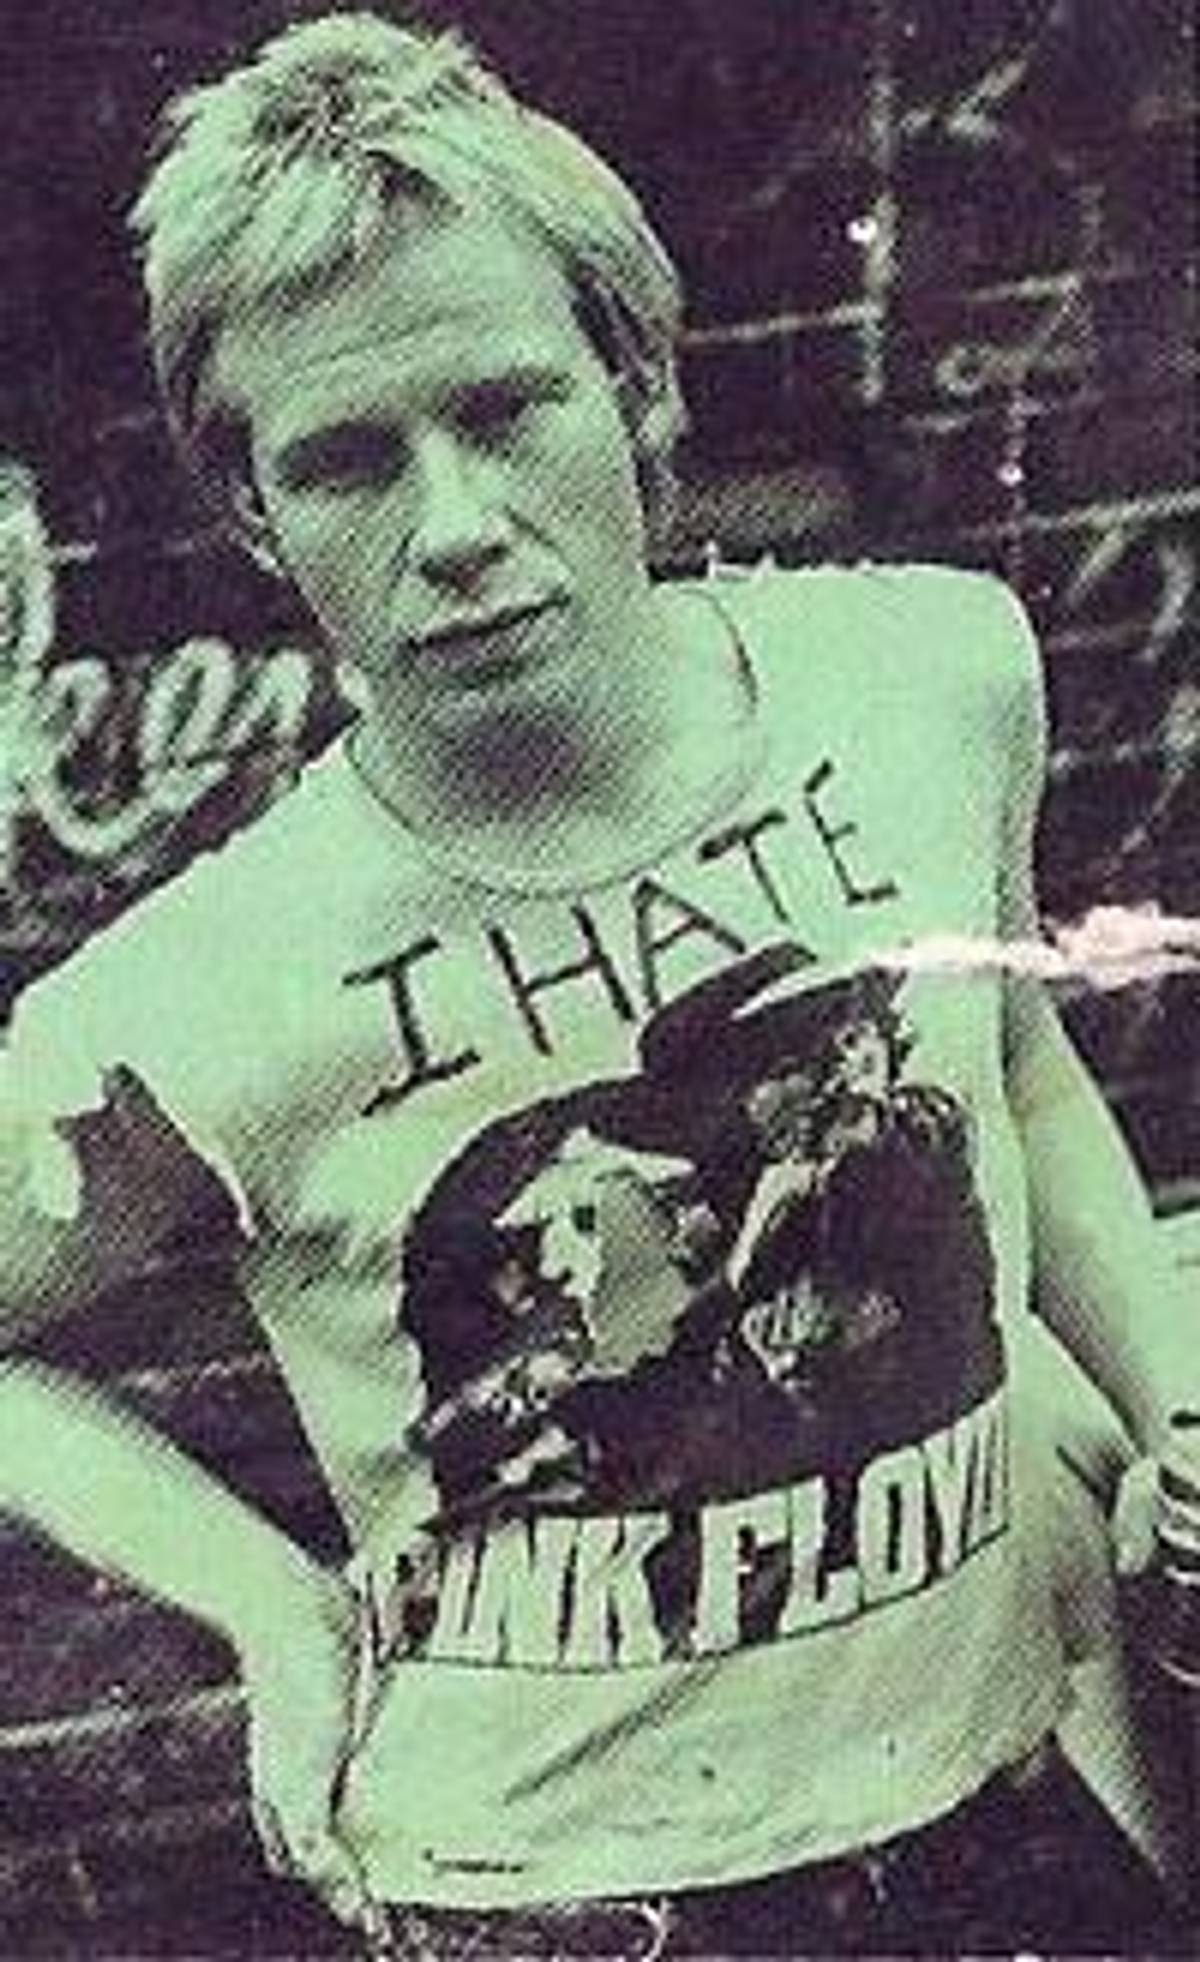 Sex Pistols drummer Paul Cook in singer Johnny Rotten’s t-shirt. (Wolfgang Heilemann )